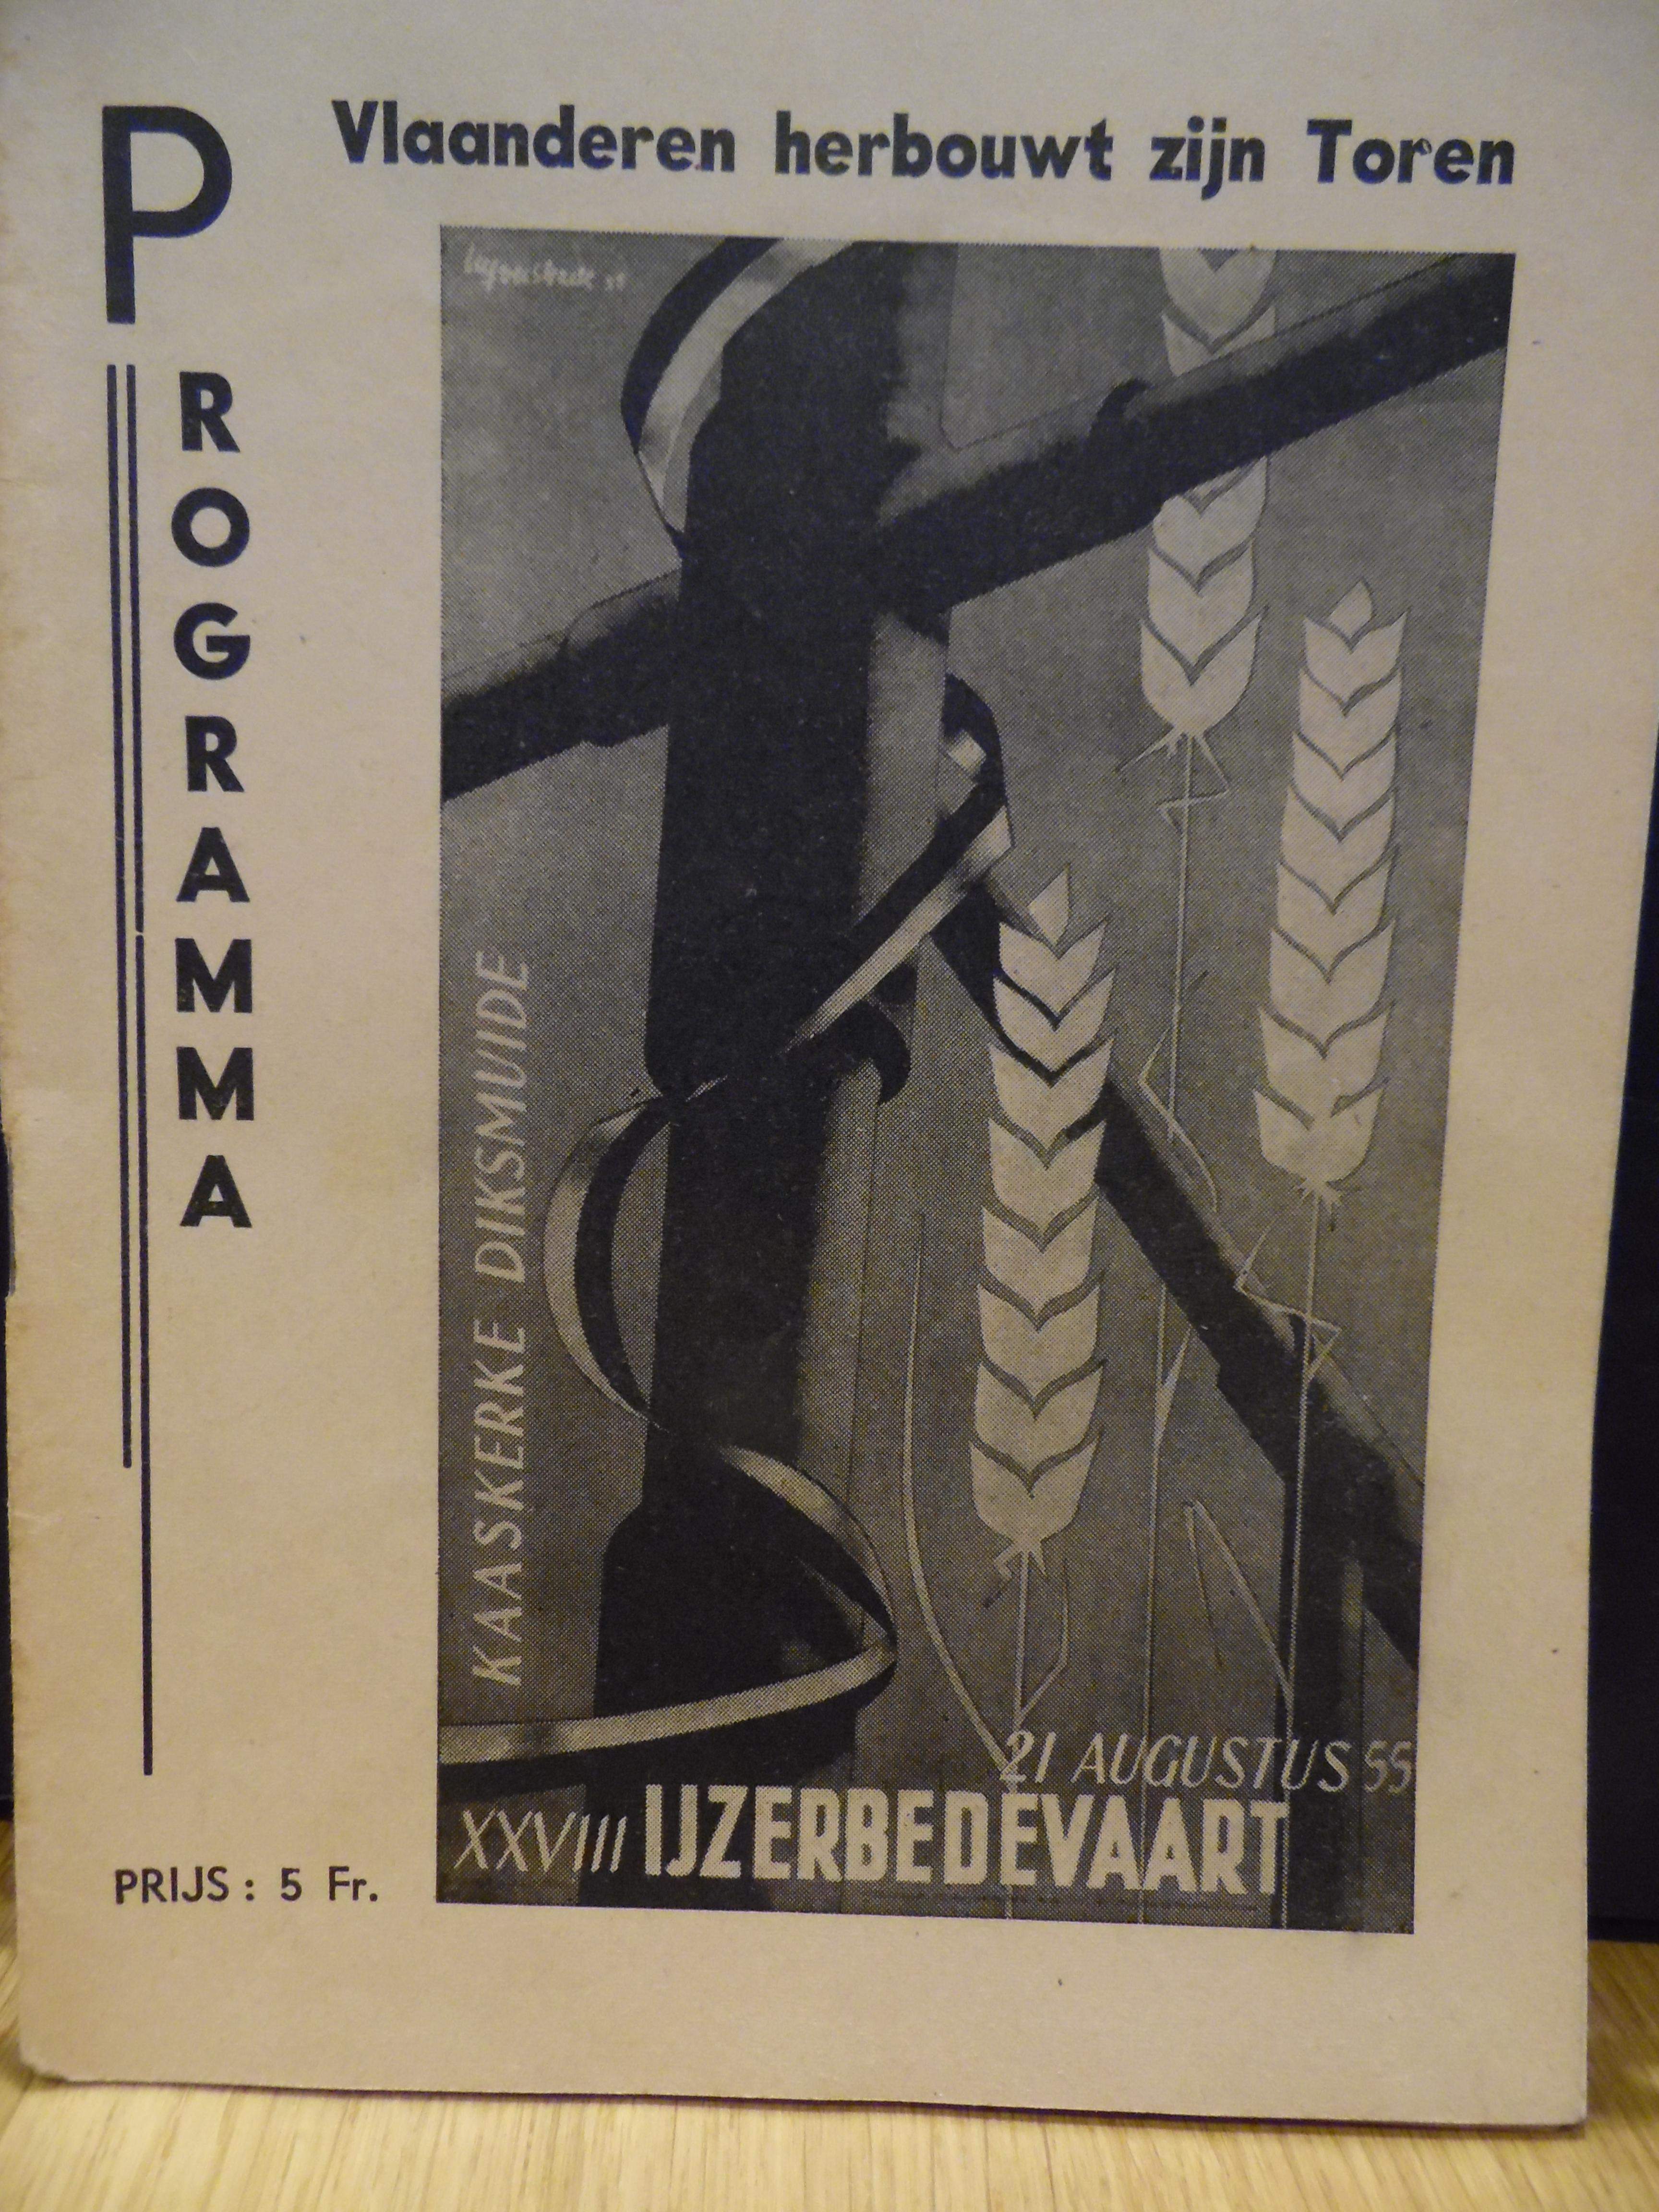 Programma Ijzerbedevaart 1952